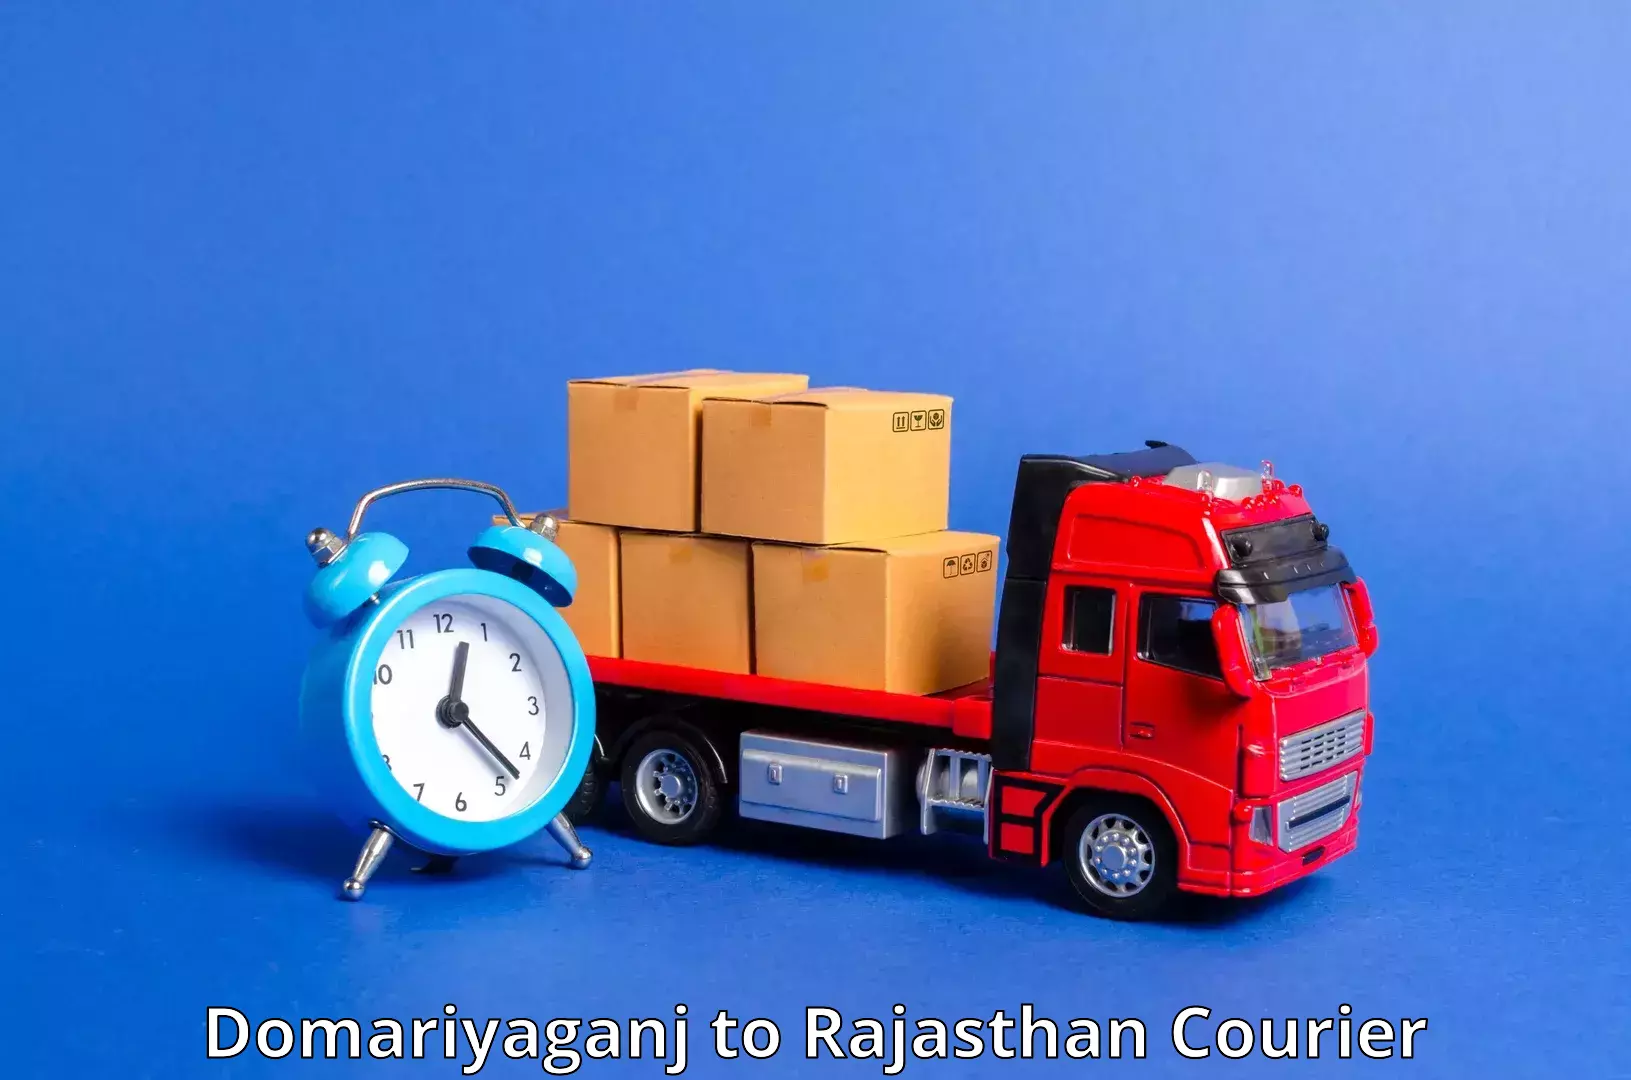 24-hour delivery options Domariyaganj to Banar